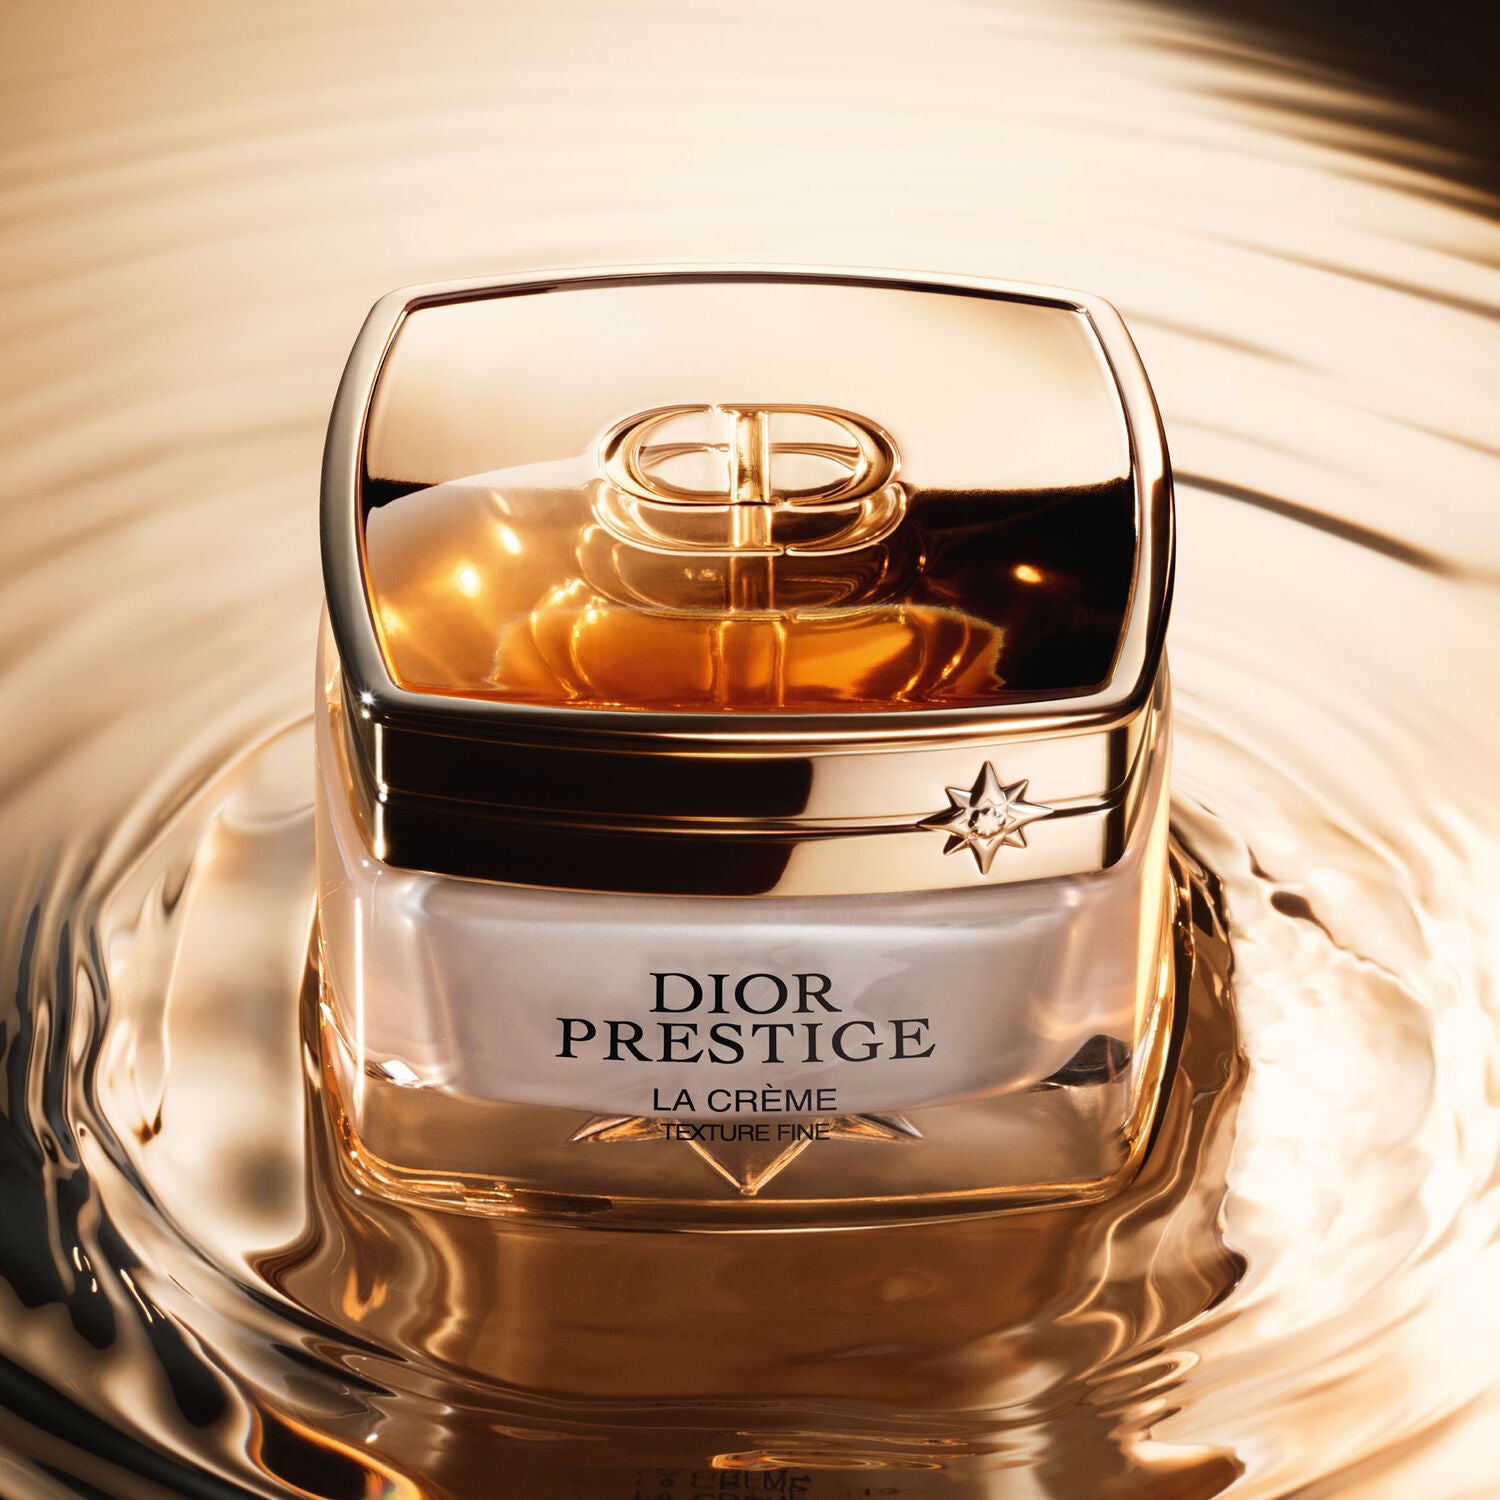 Dior Prestige La Creme Texture Fine